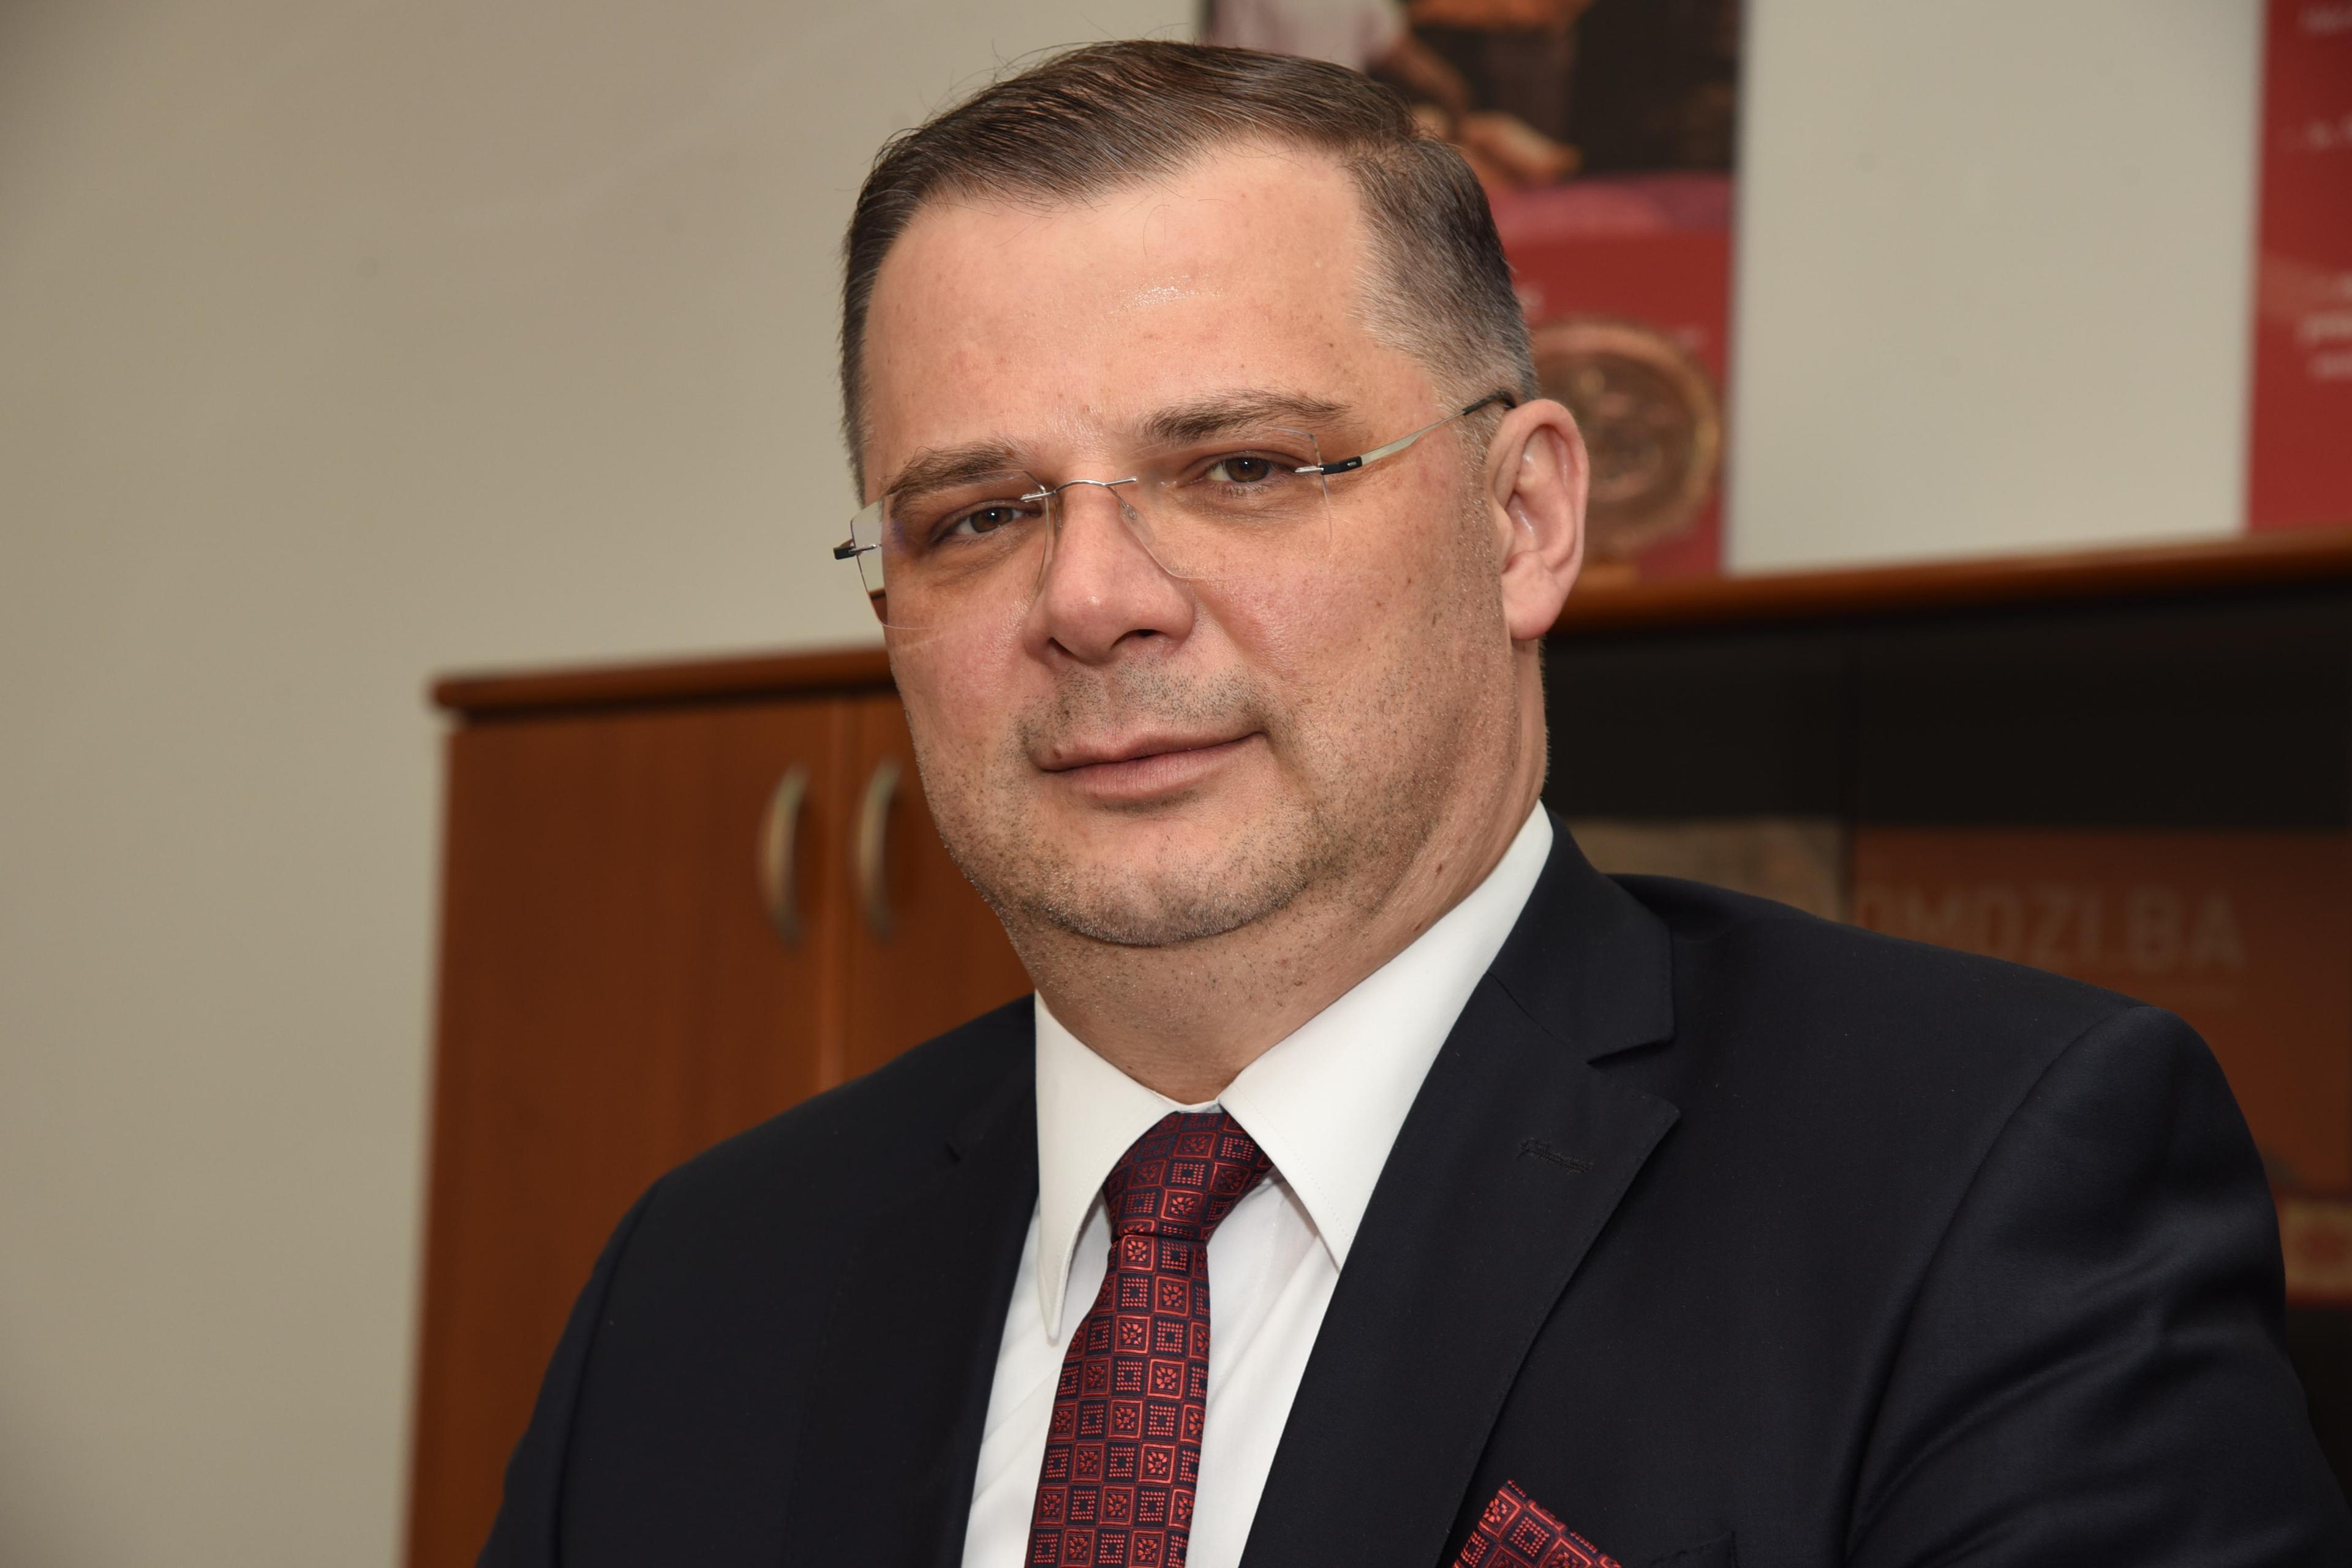 Madžid Avdagić, član NO, nakon održane Skupštine dioničara: Važno se fokusirati na poslovanje "Bosnalijeka"